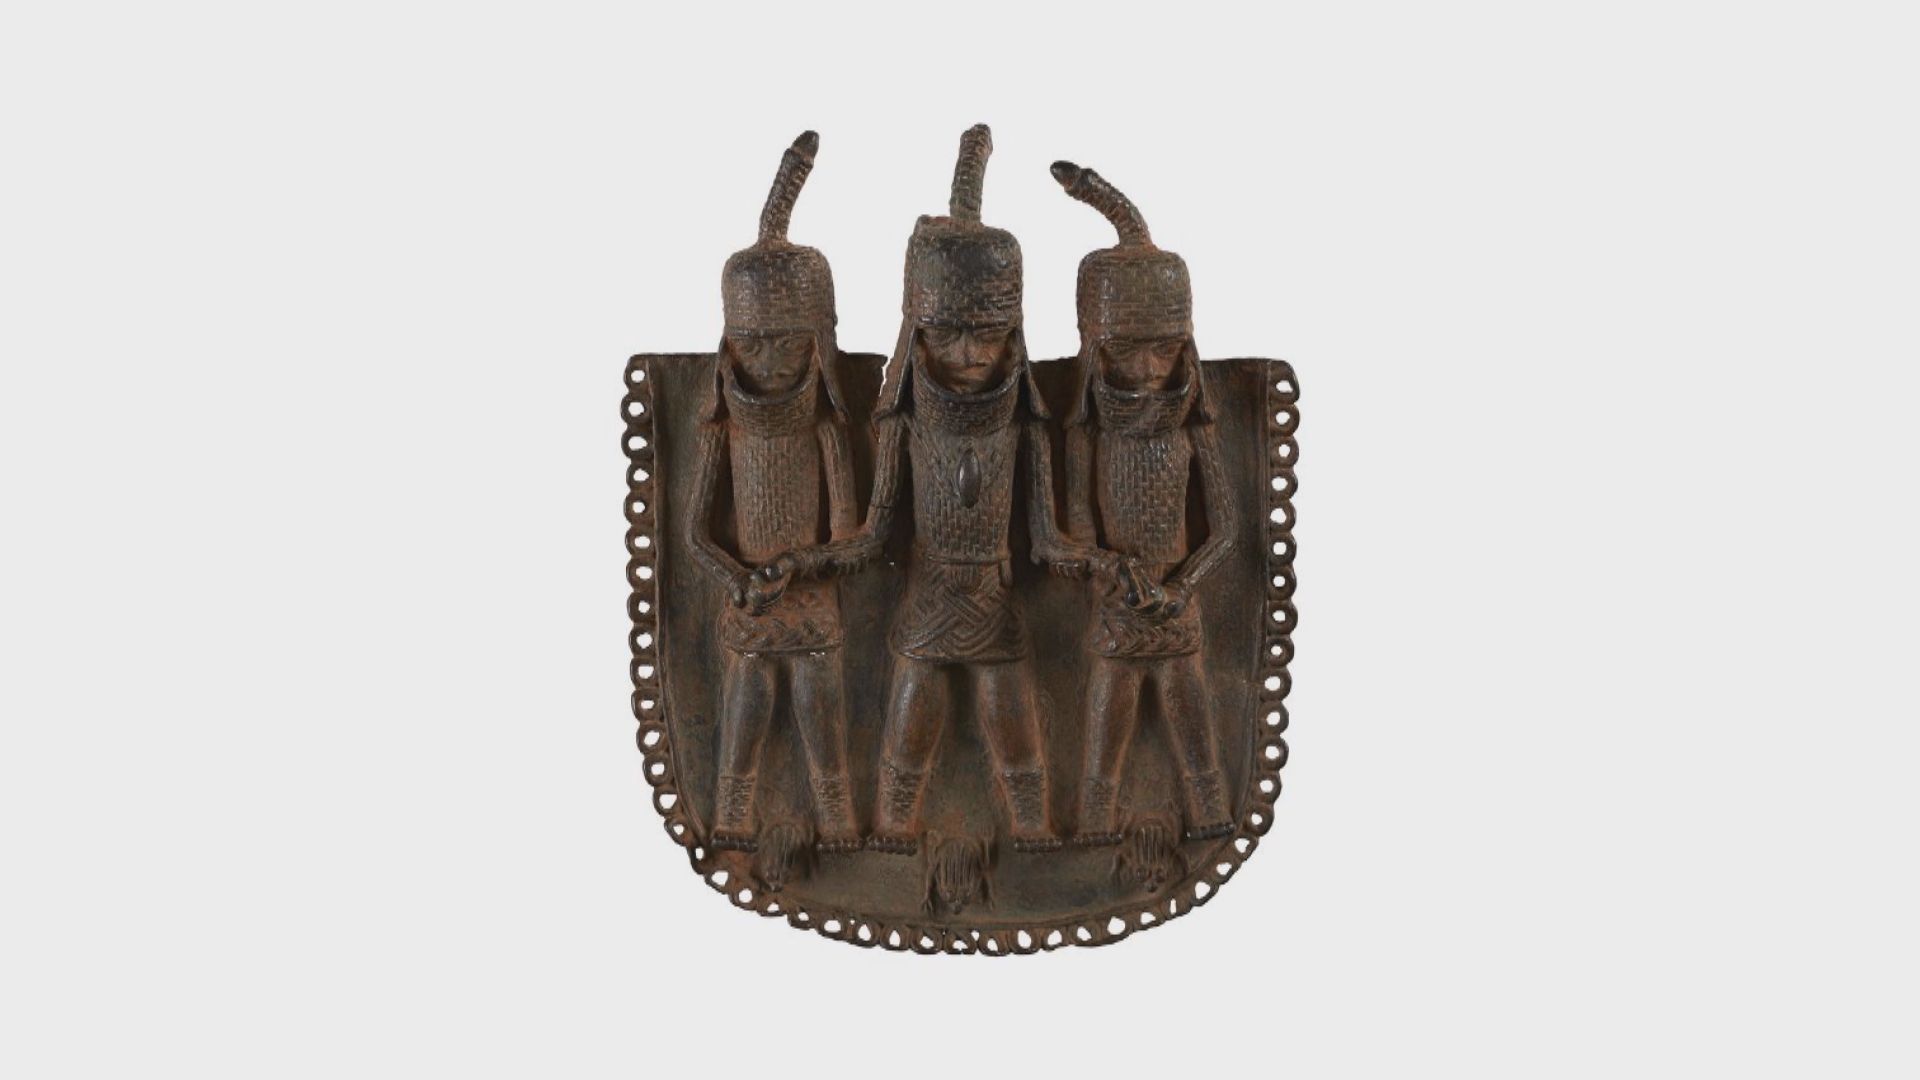 英國有博物館向尼日利亞歸還72件貝寧王國時期文物